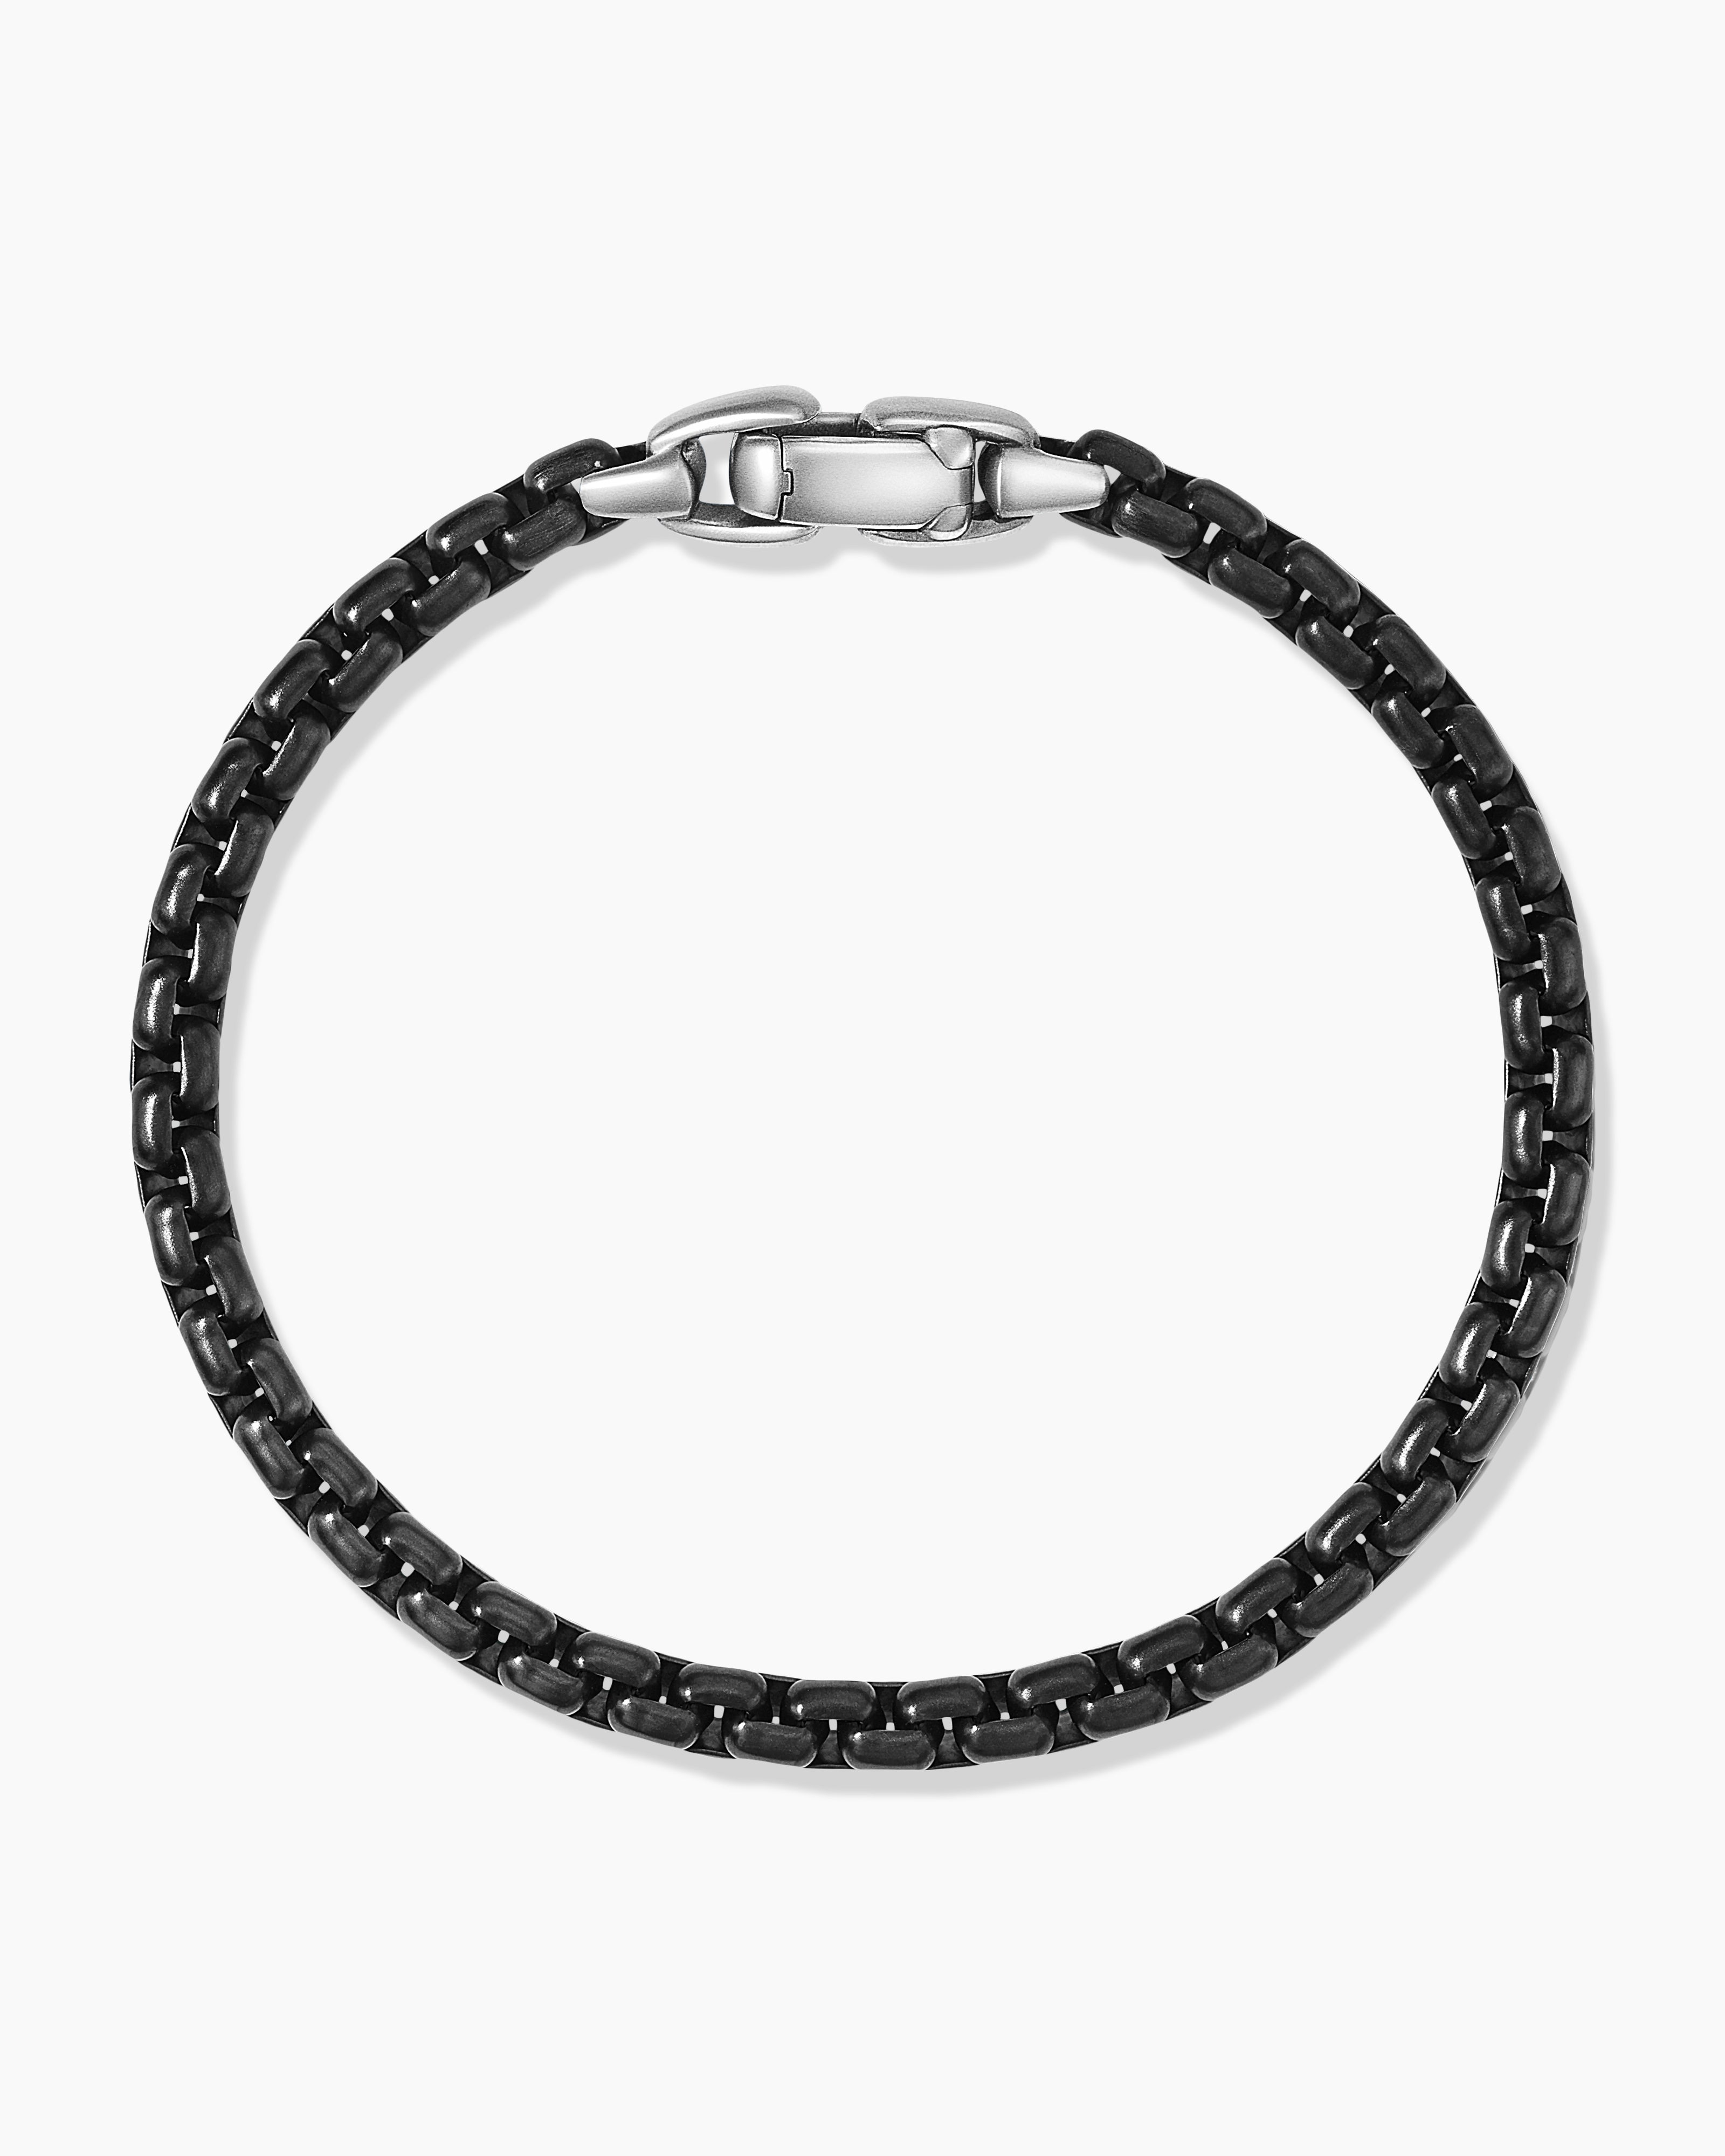 6mm Stainless Steel Bracelet for Men Figaro Chain Silver Jewelry Waterproof  | eBay